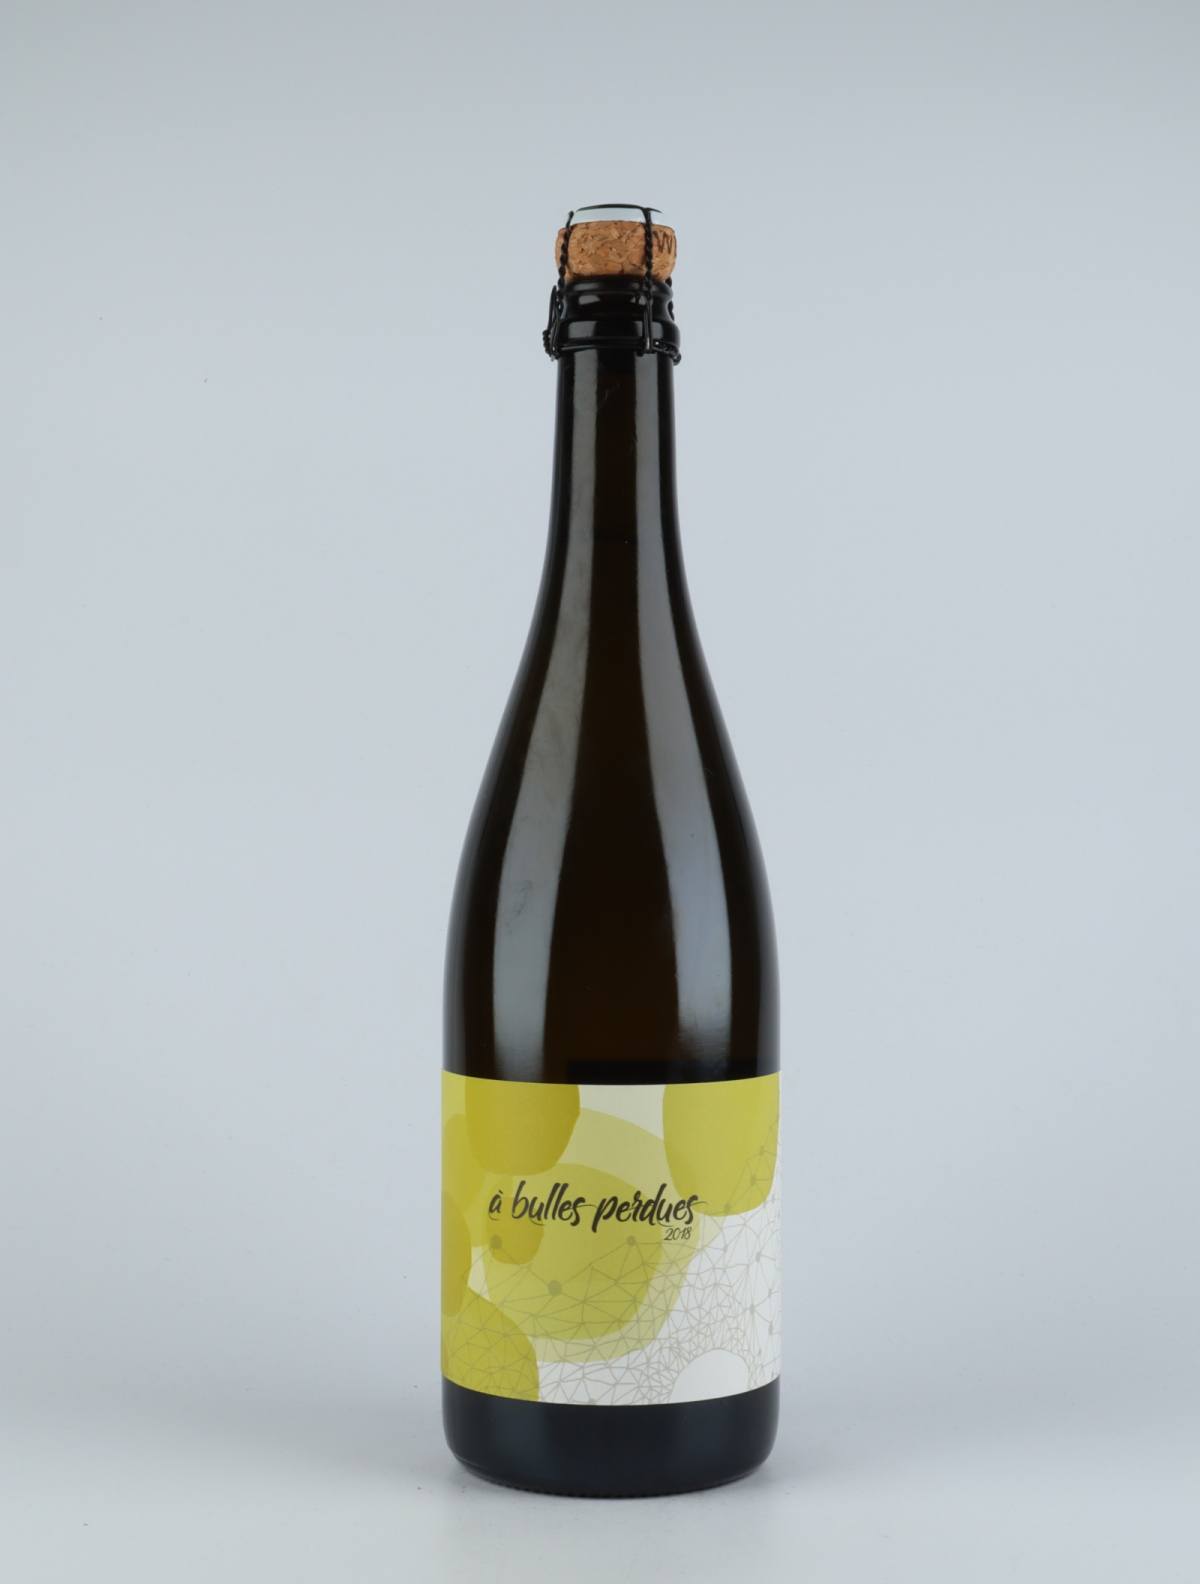 En flaske 2018 Vin Mousseux - Cuvée Longue Mousserende fra Domaine Didon, Bourgogne i Frankrig